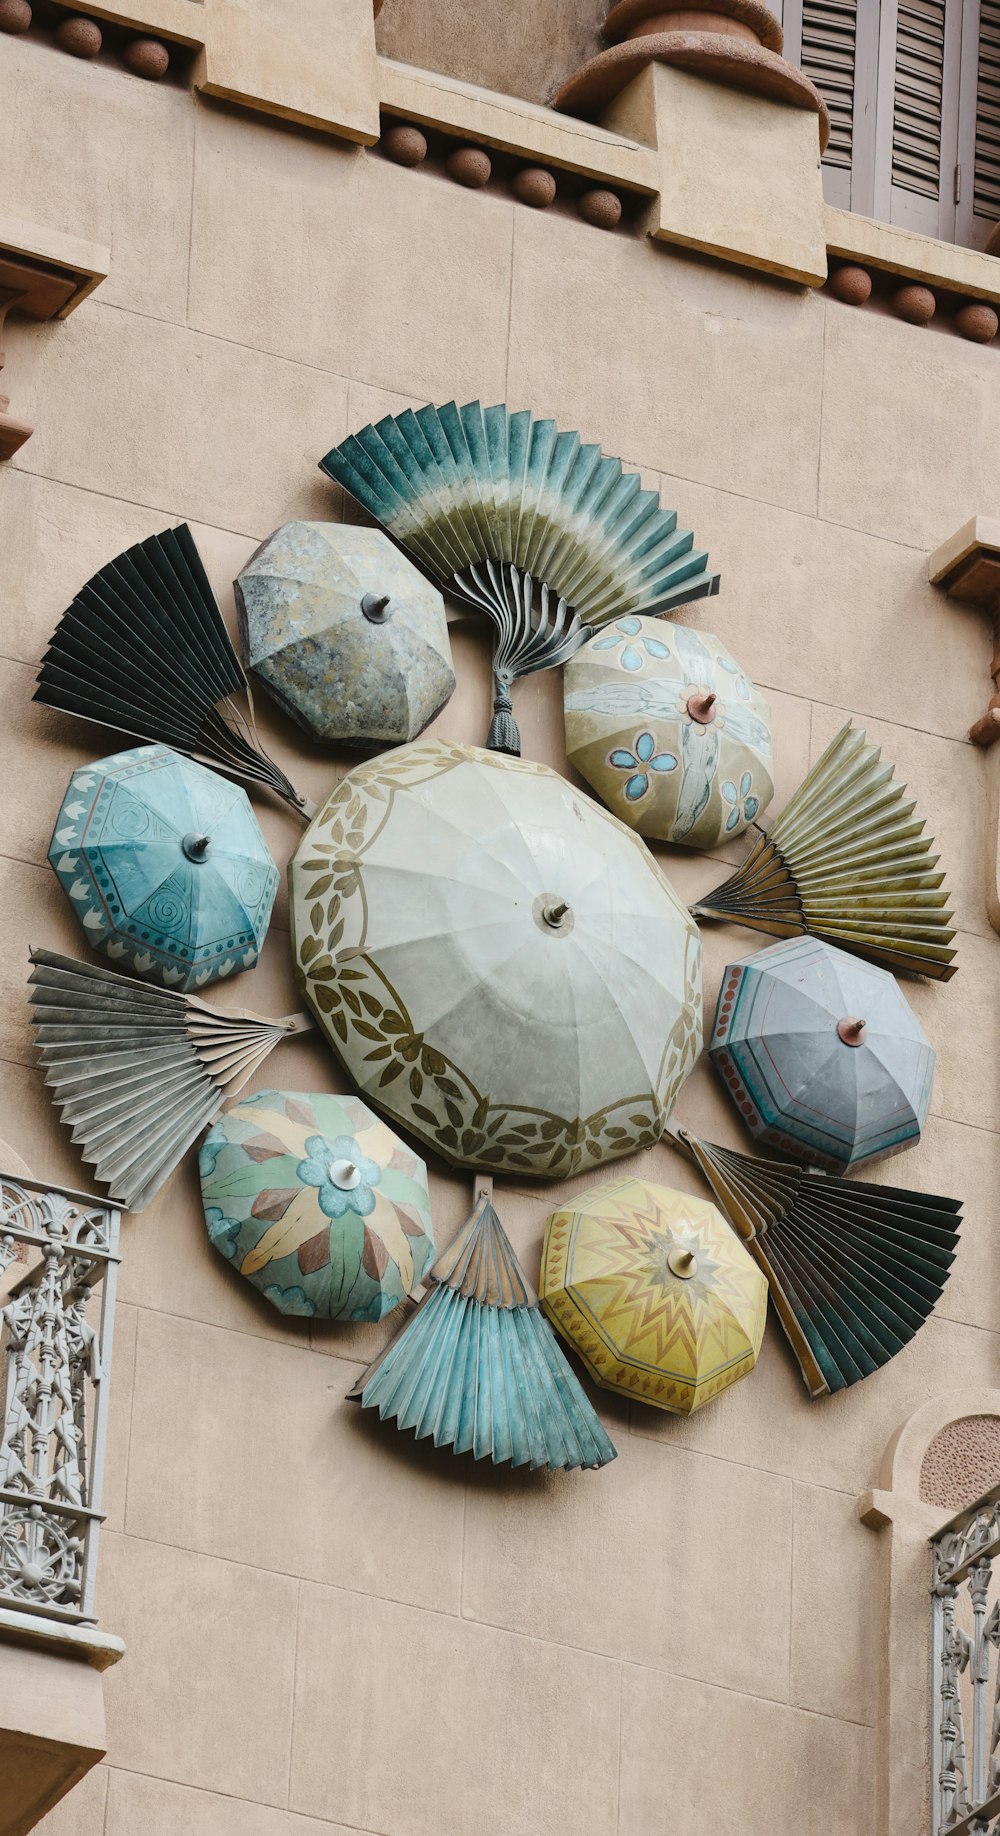 a group of fan shaped objects